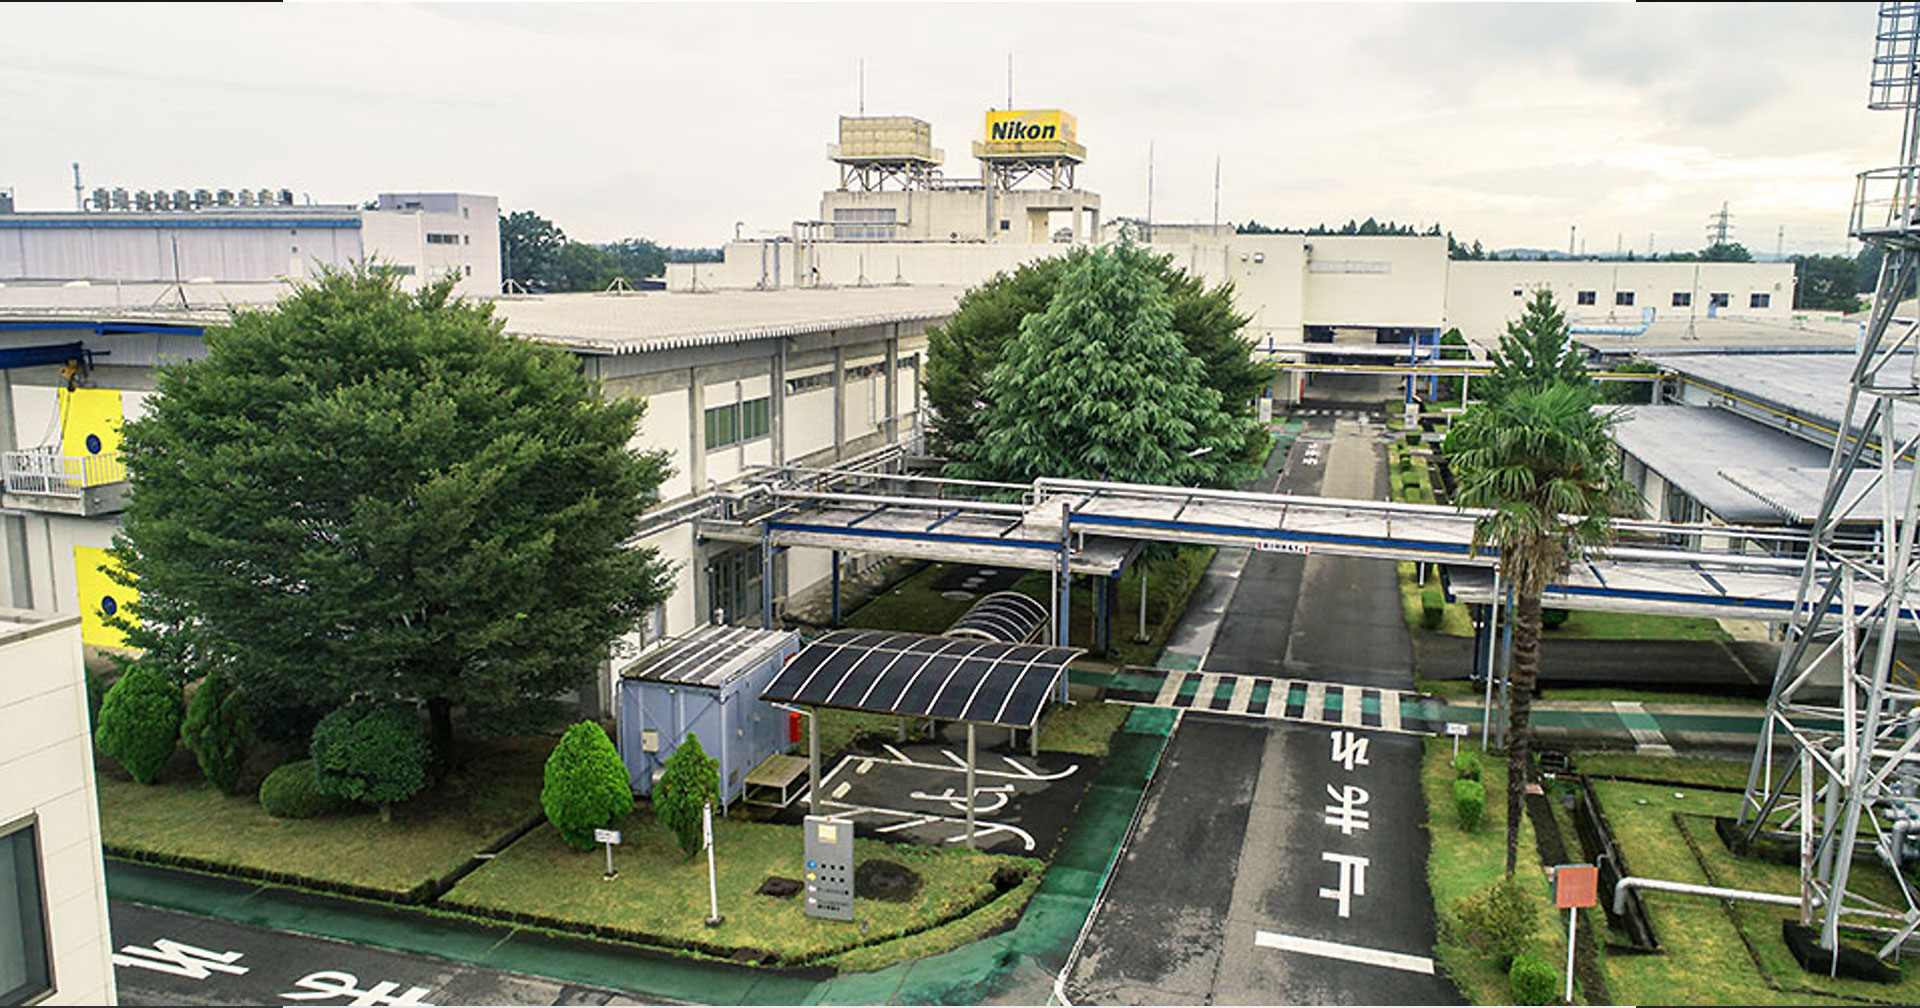 Nikon ทุ่มงบกว่า 7,000 ล้าน สร้างโรงงานผลิตเลนส์แห่งใหม่ในจังหวัด Tochigi ประเทศญี่ปุ่น